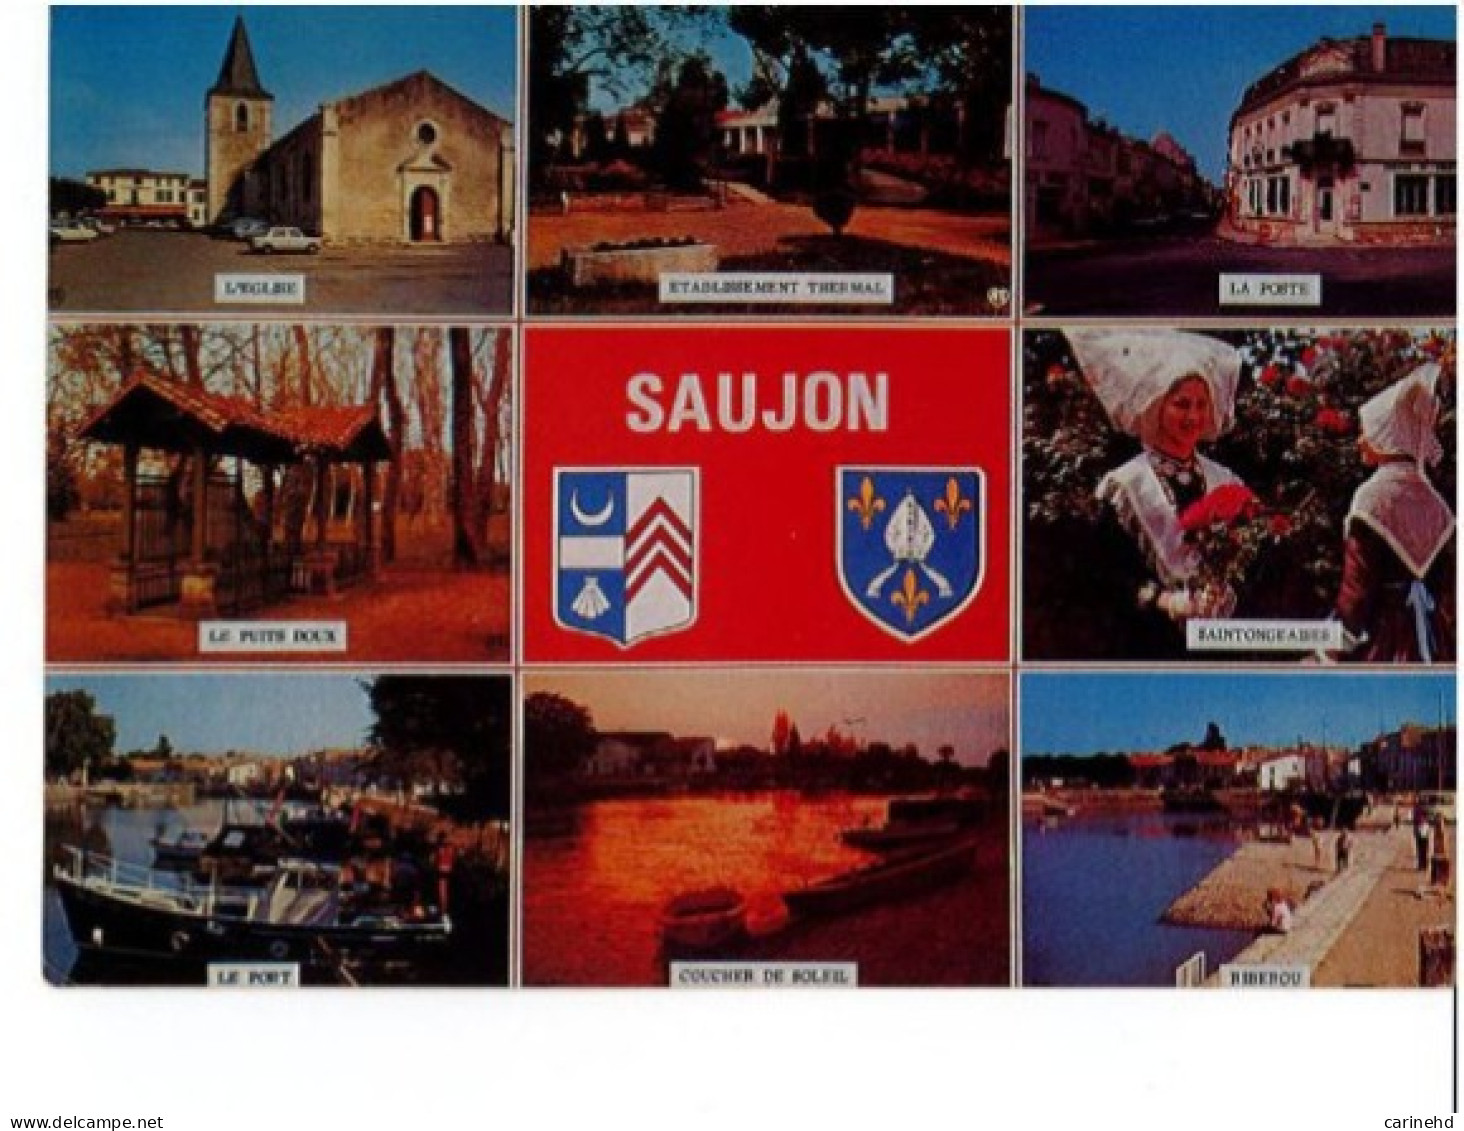 SAUJON - Saujon